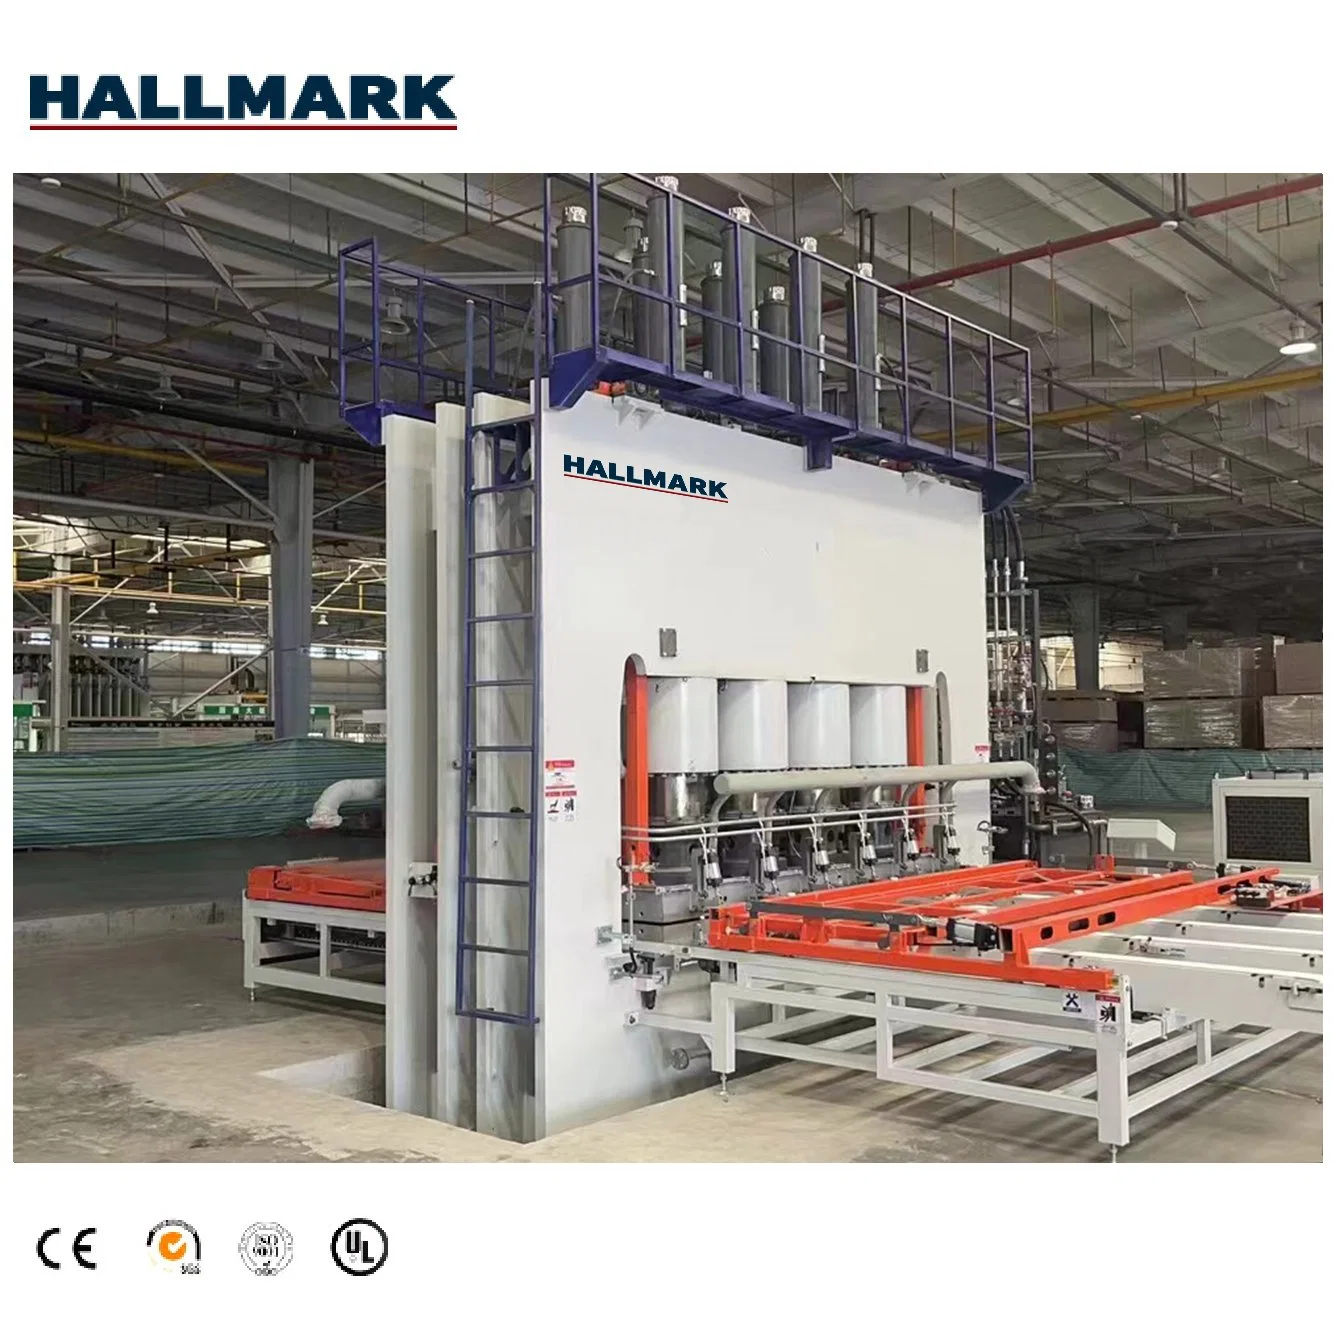 Hydraulic Short Cycle Laminating Hot Press Machine for Melamine Paper Laminate Hot Press Machine